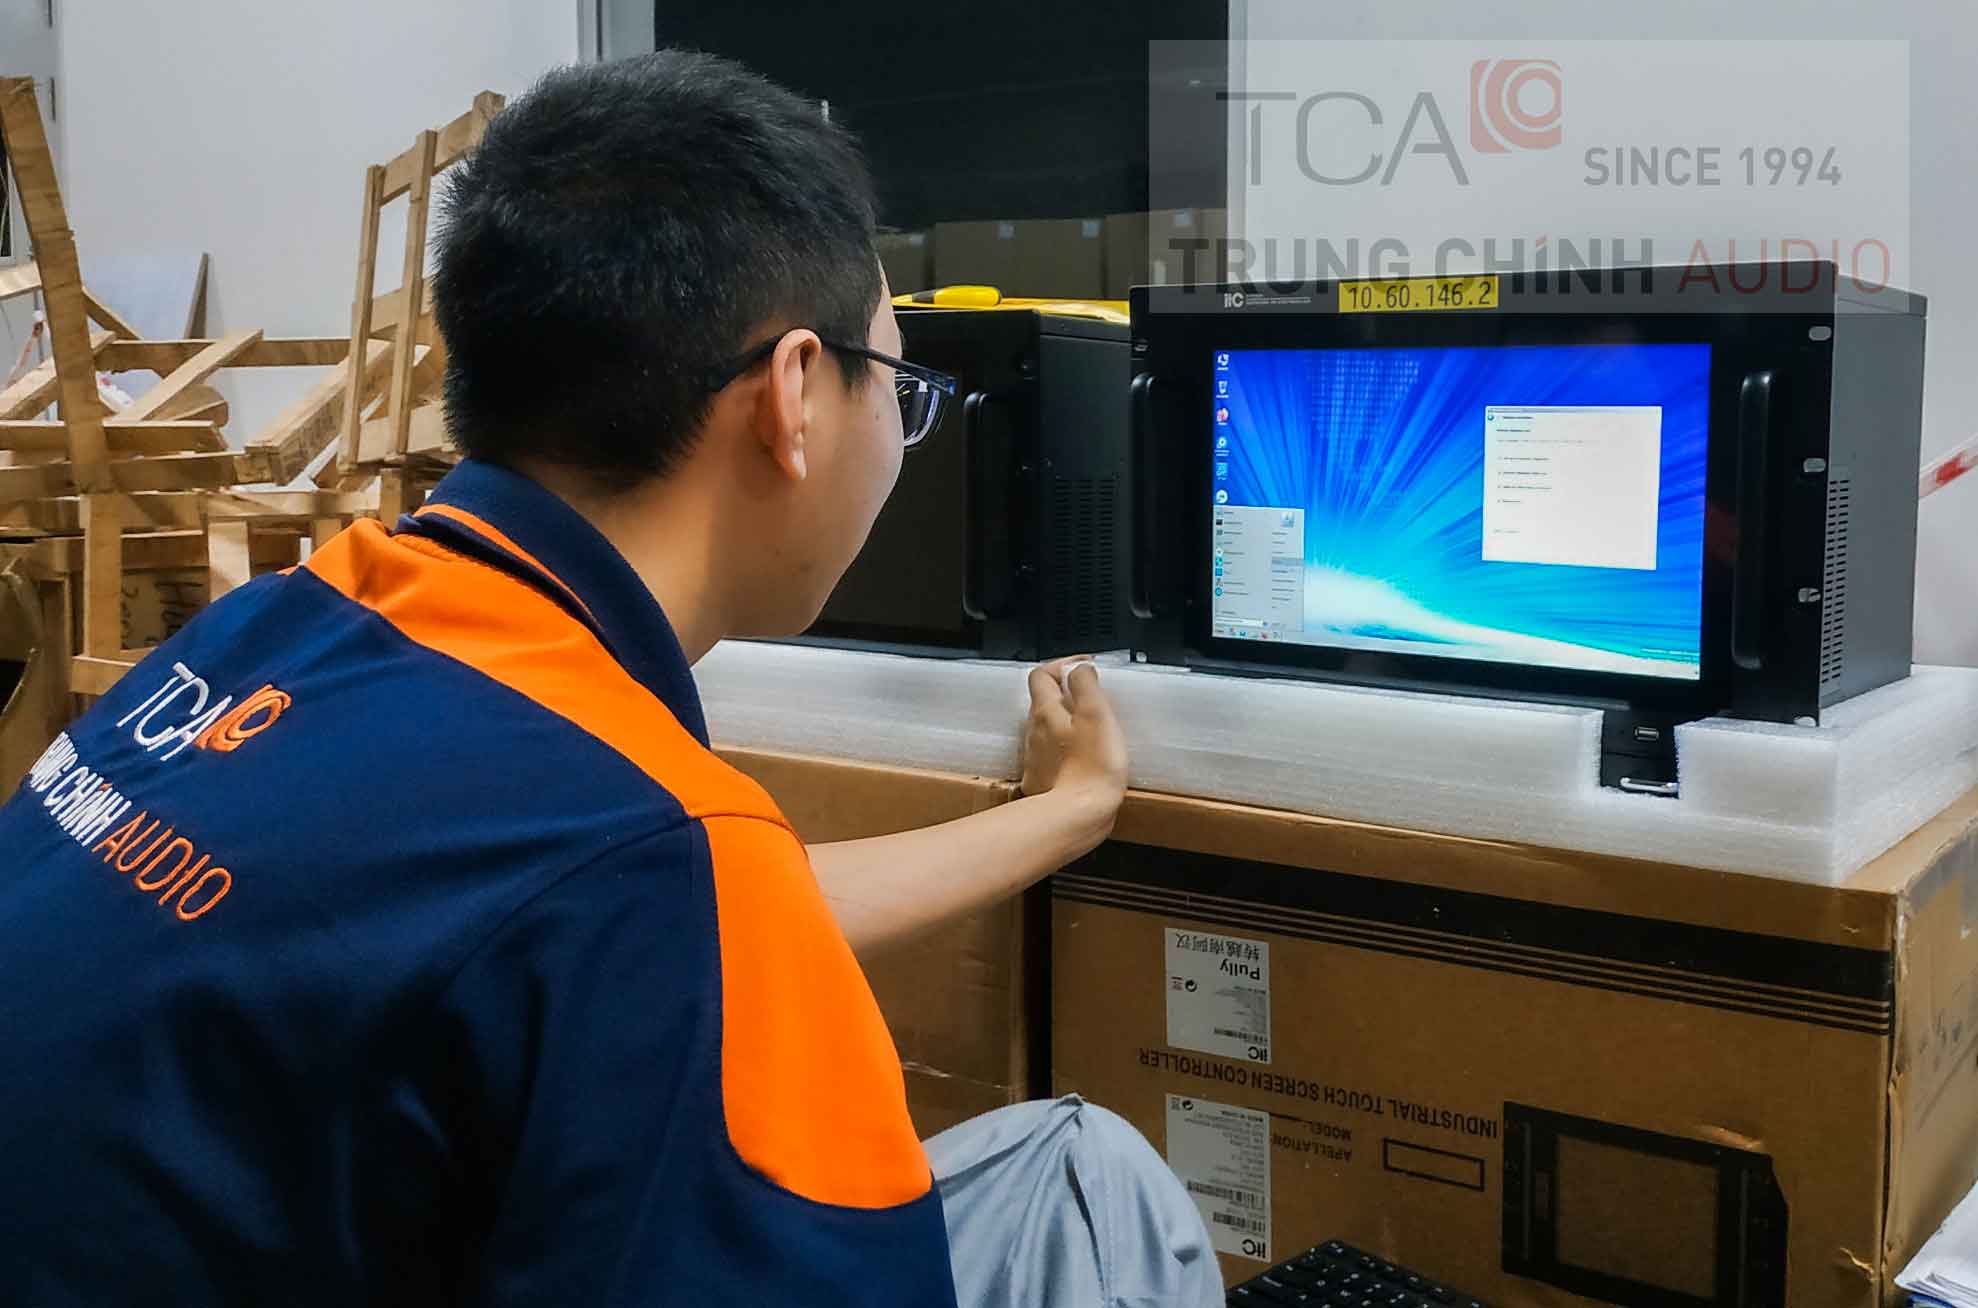 Cài đặt âm thanh IP iTC, hệ thống thông báo nhà xưởng: Tập đoàn Điện tử TCL